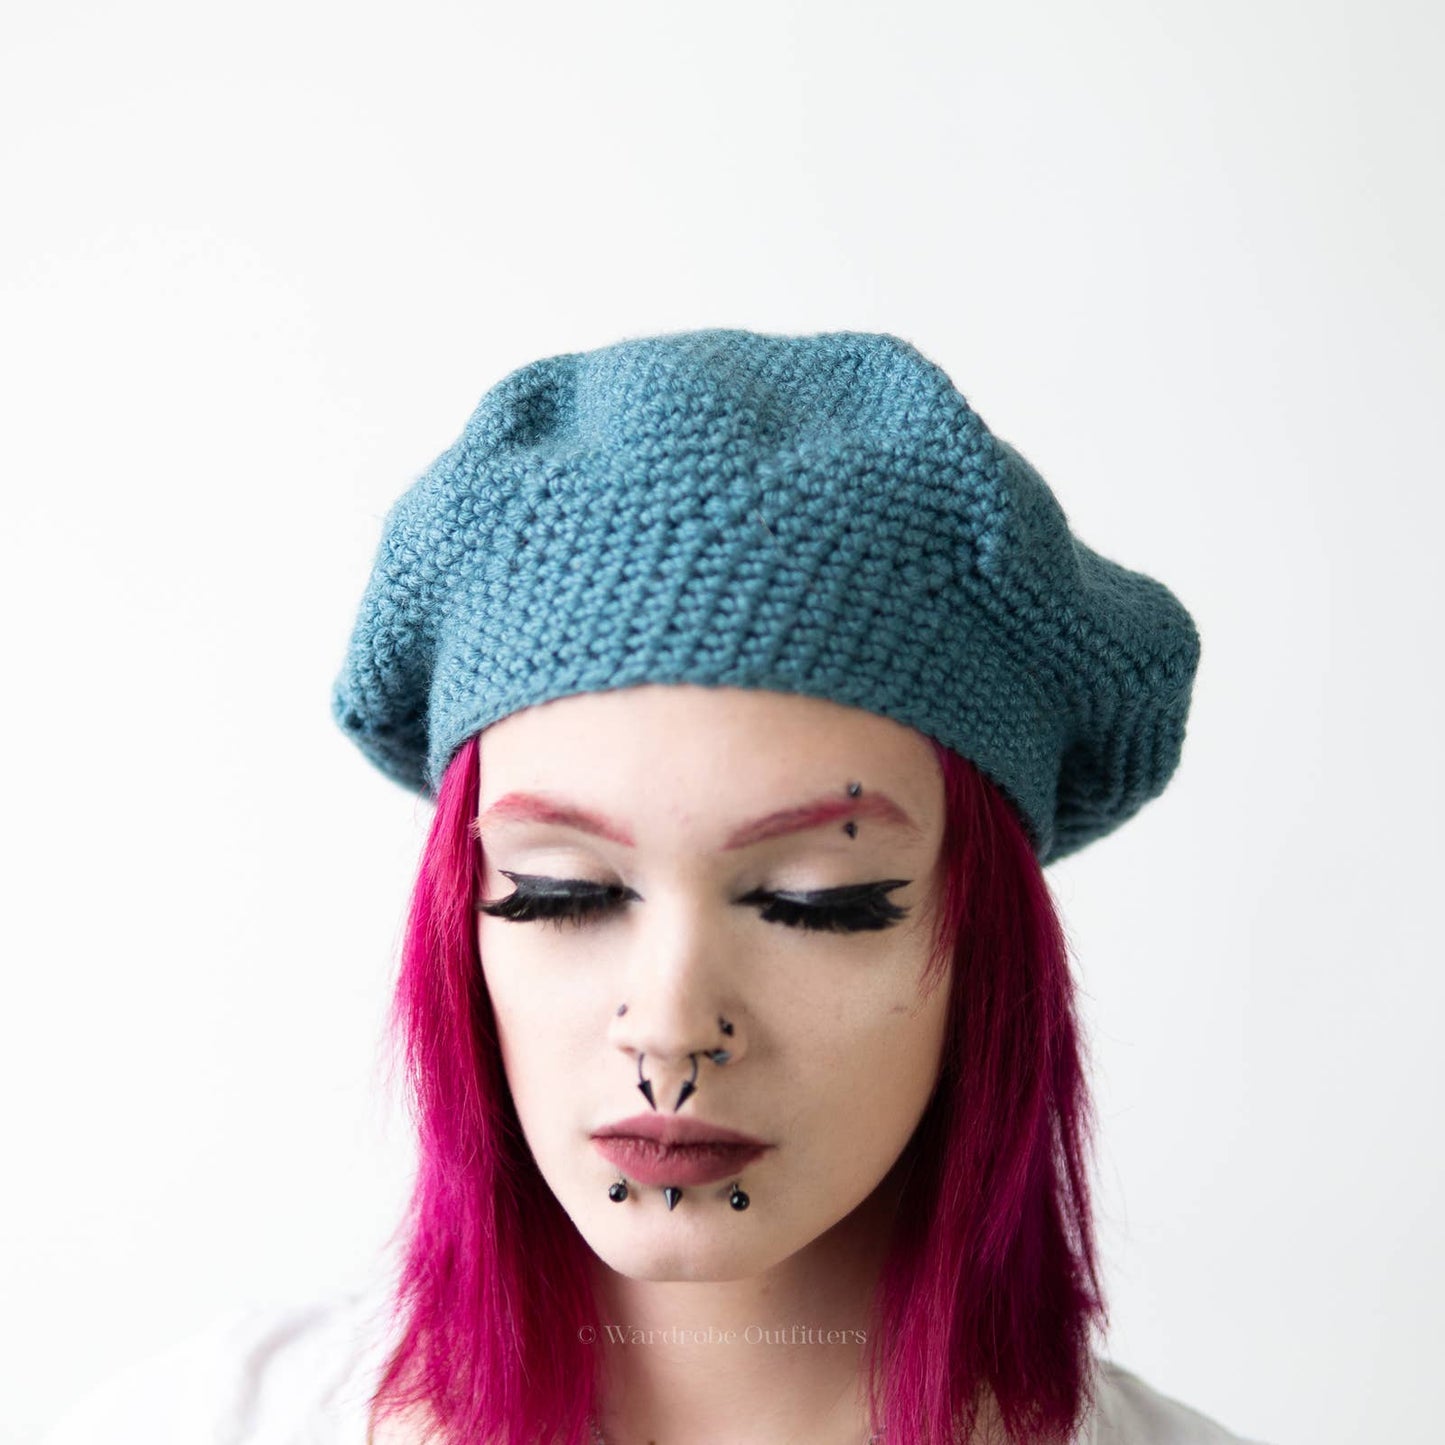 Handmade Crochet Knit Sky Blue Beanie Newsboy Cap & Fingerless Glove Set